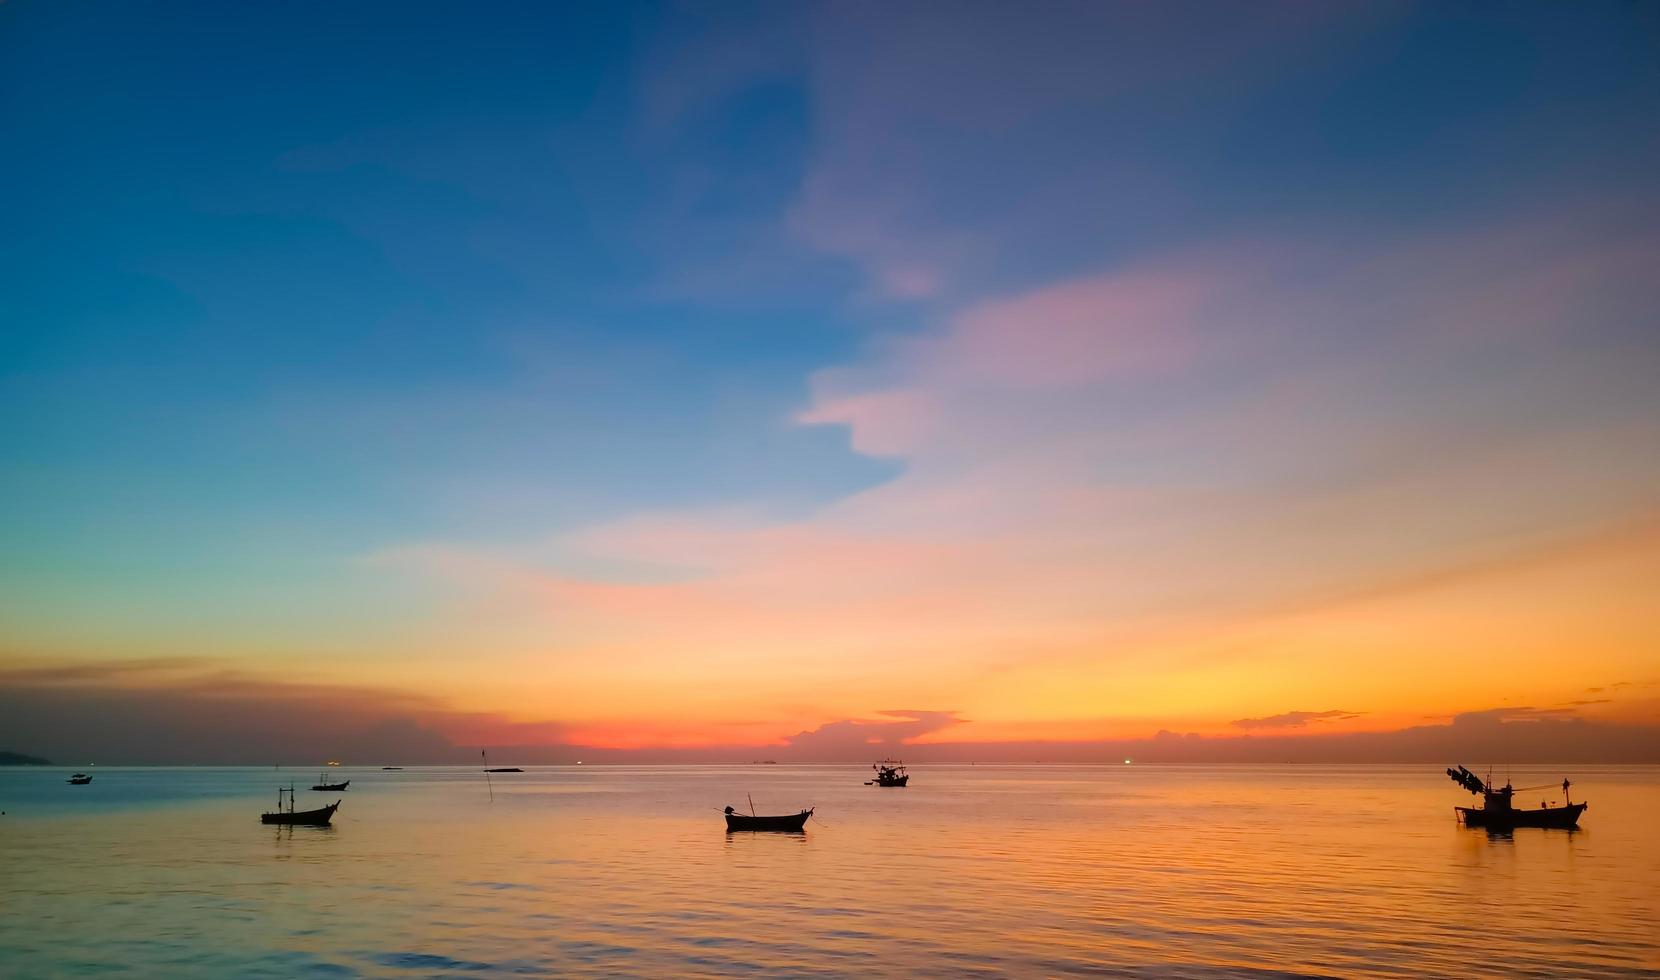 céu e mar ao pôr do sol, barcos locais flutuando no meio do mar, céu laranja e azul refletindo o mar, dando uma sensação de calma. foto